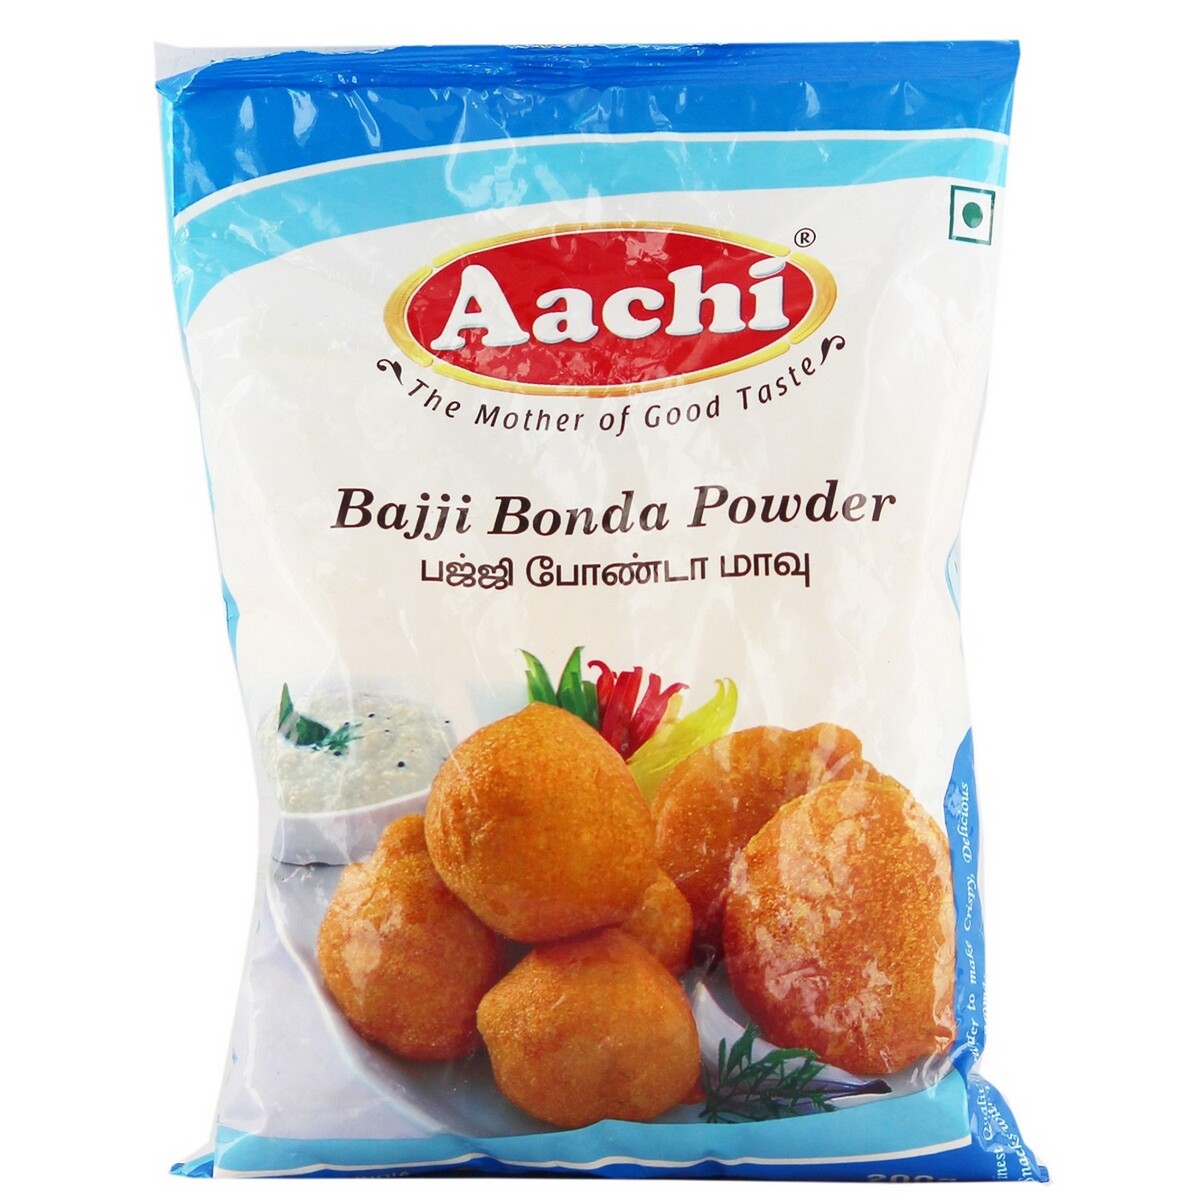 Aachi Bajji Bonda Powder 200g